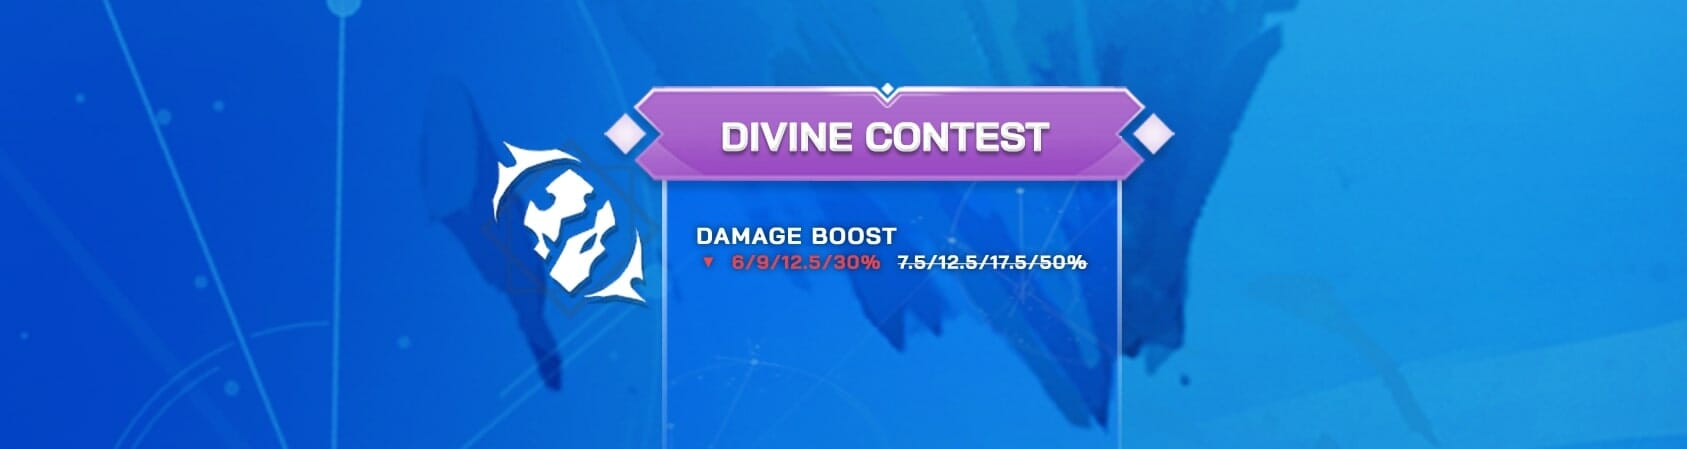 Divine contest